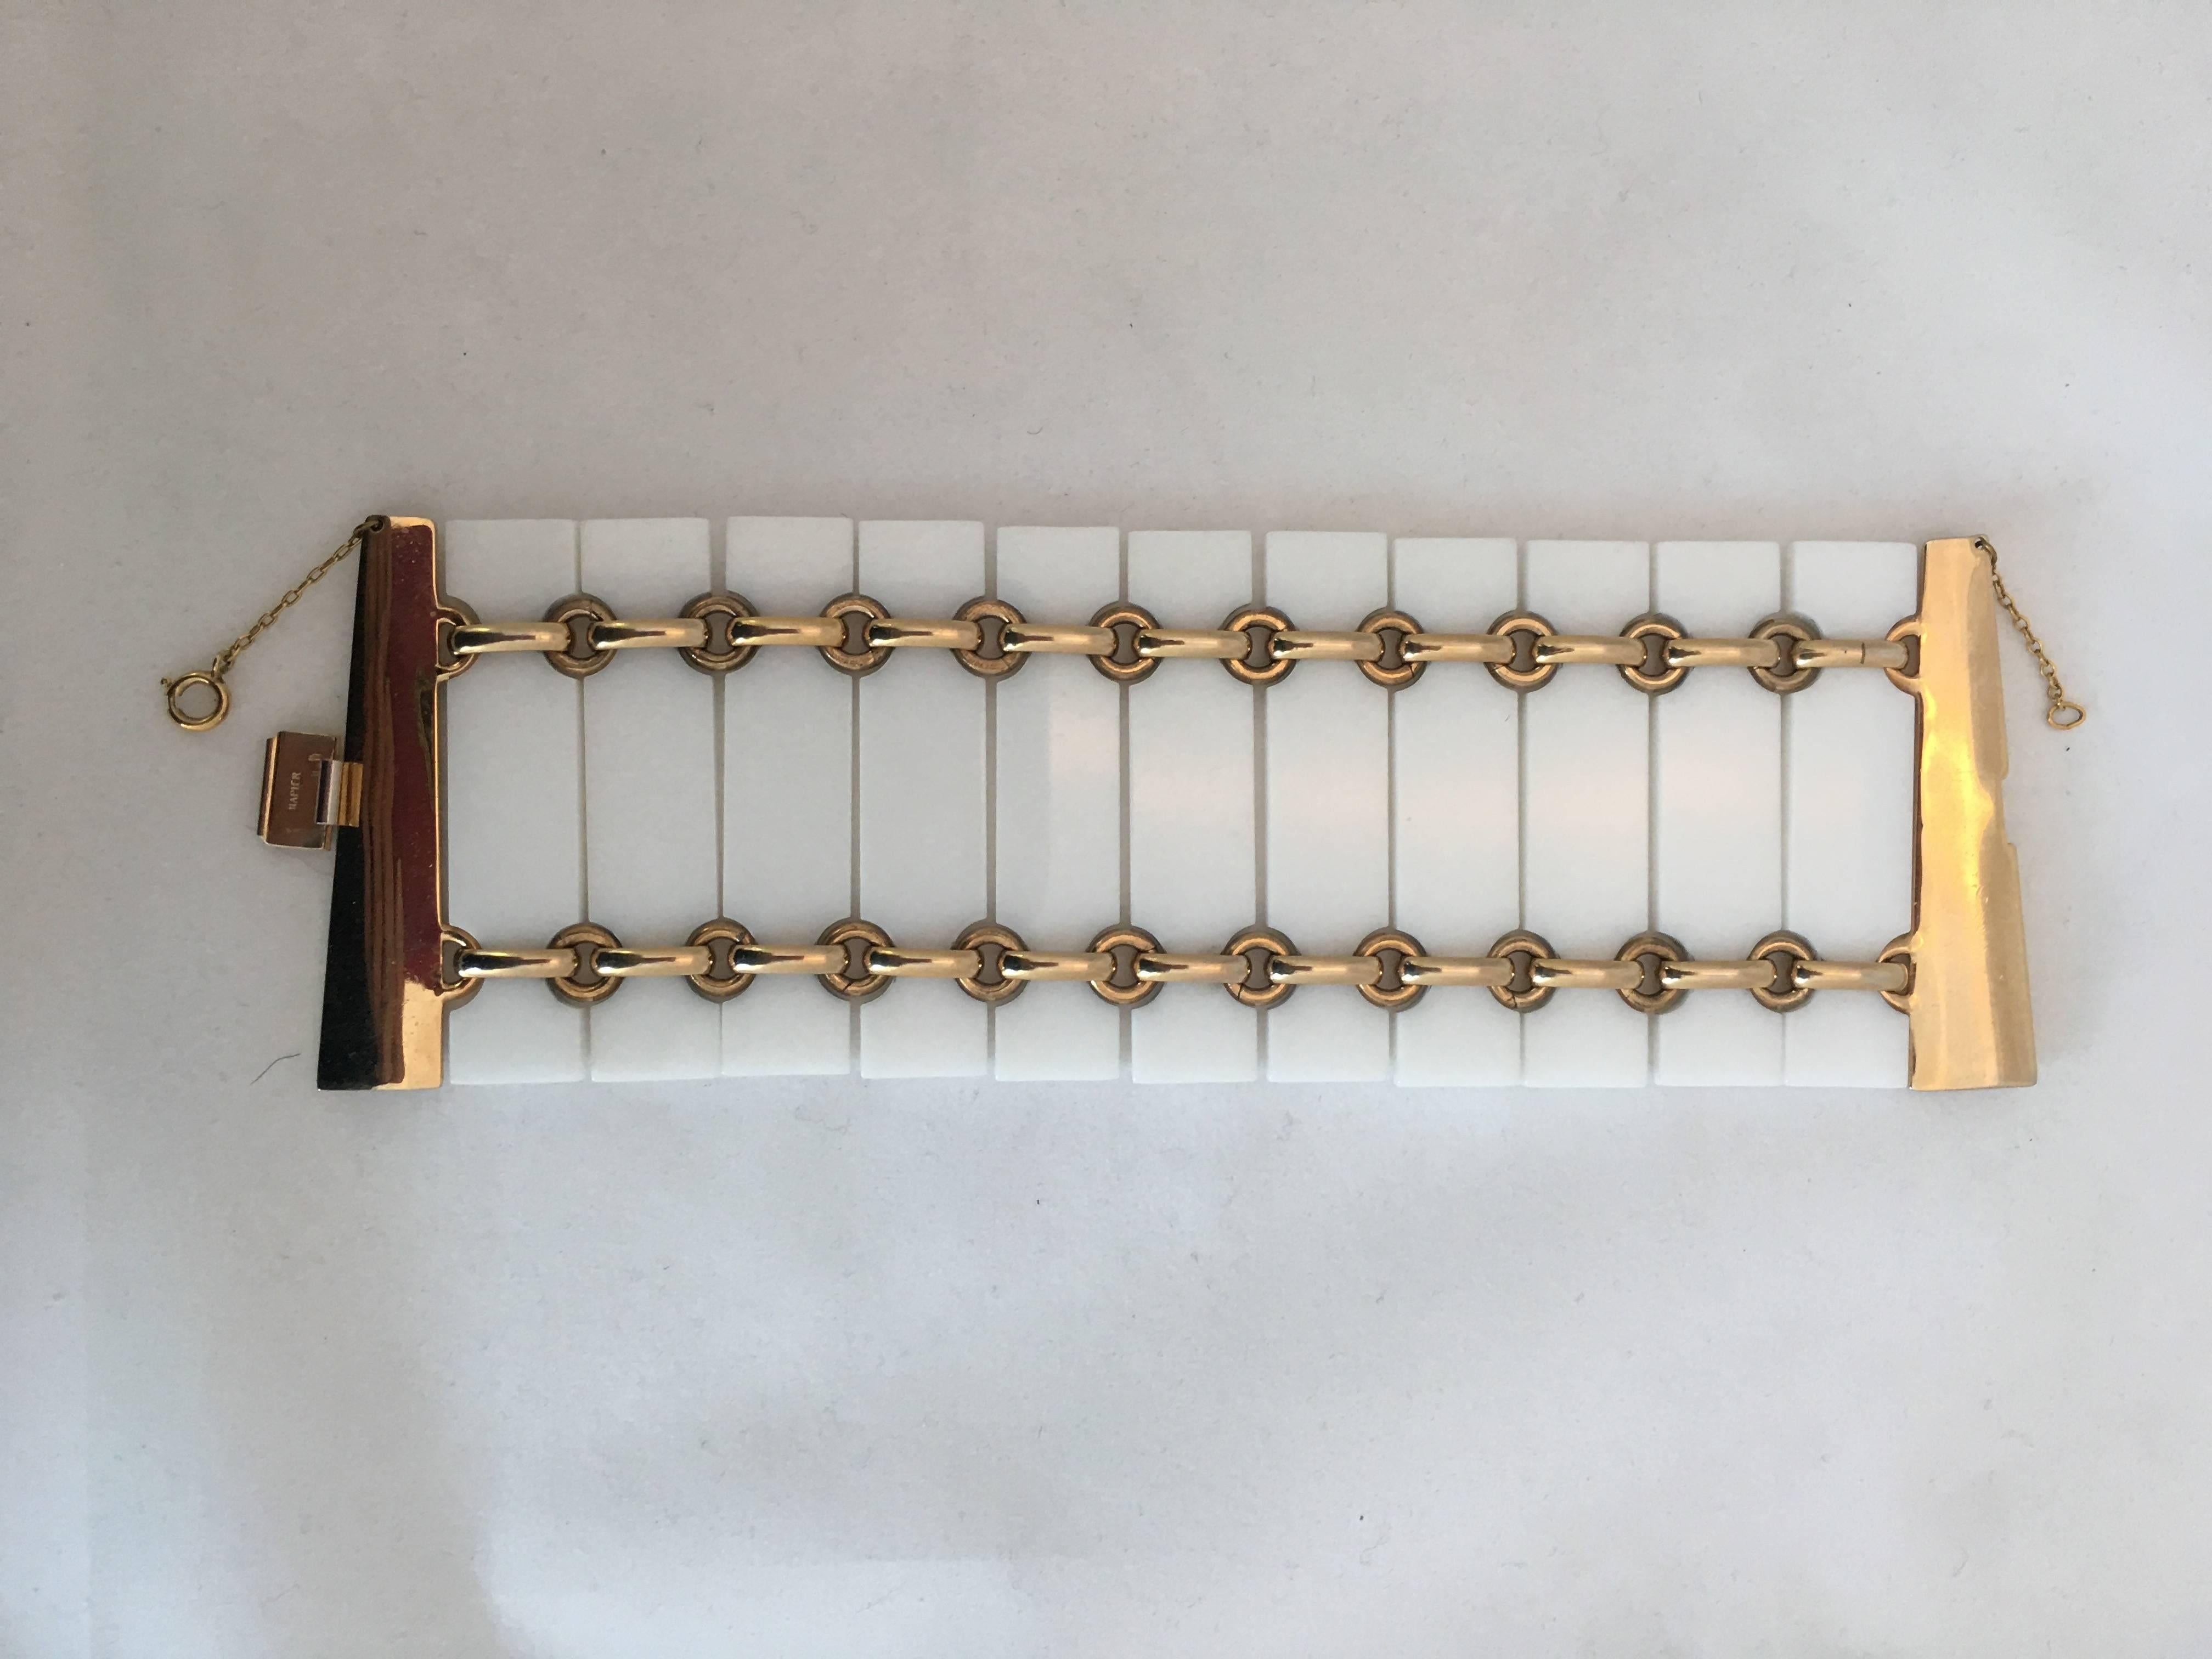  Napier 1980's - Bracelet à maillons en acrylique blanc et métal doré

Longueur : 7.75